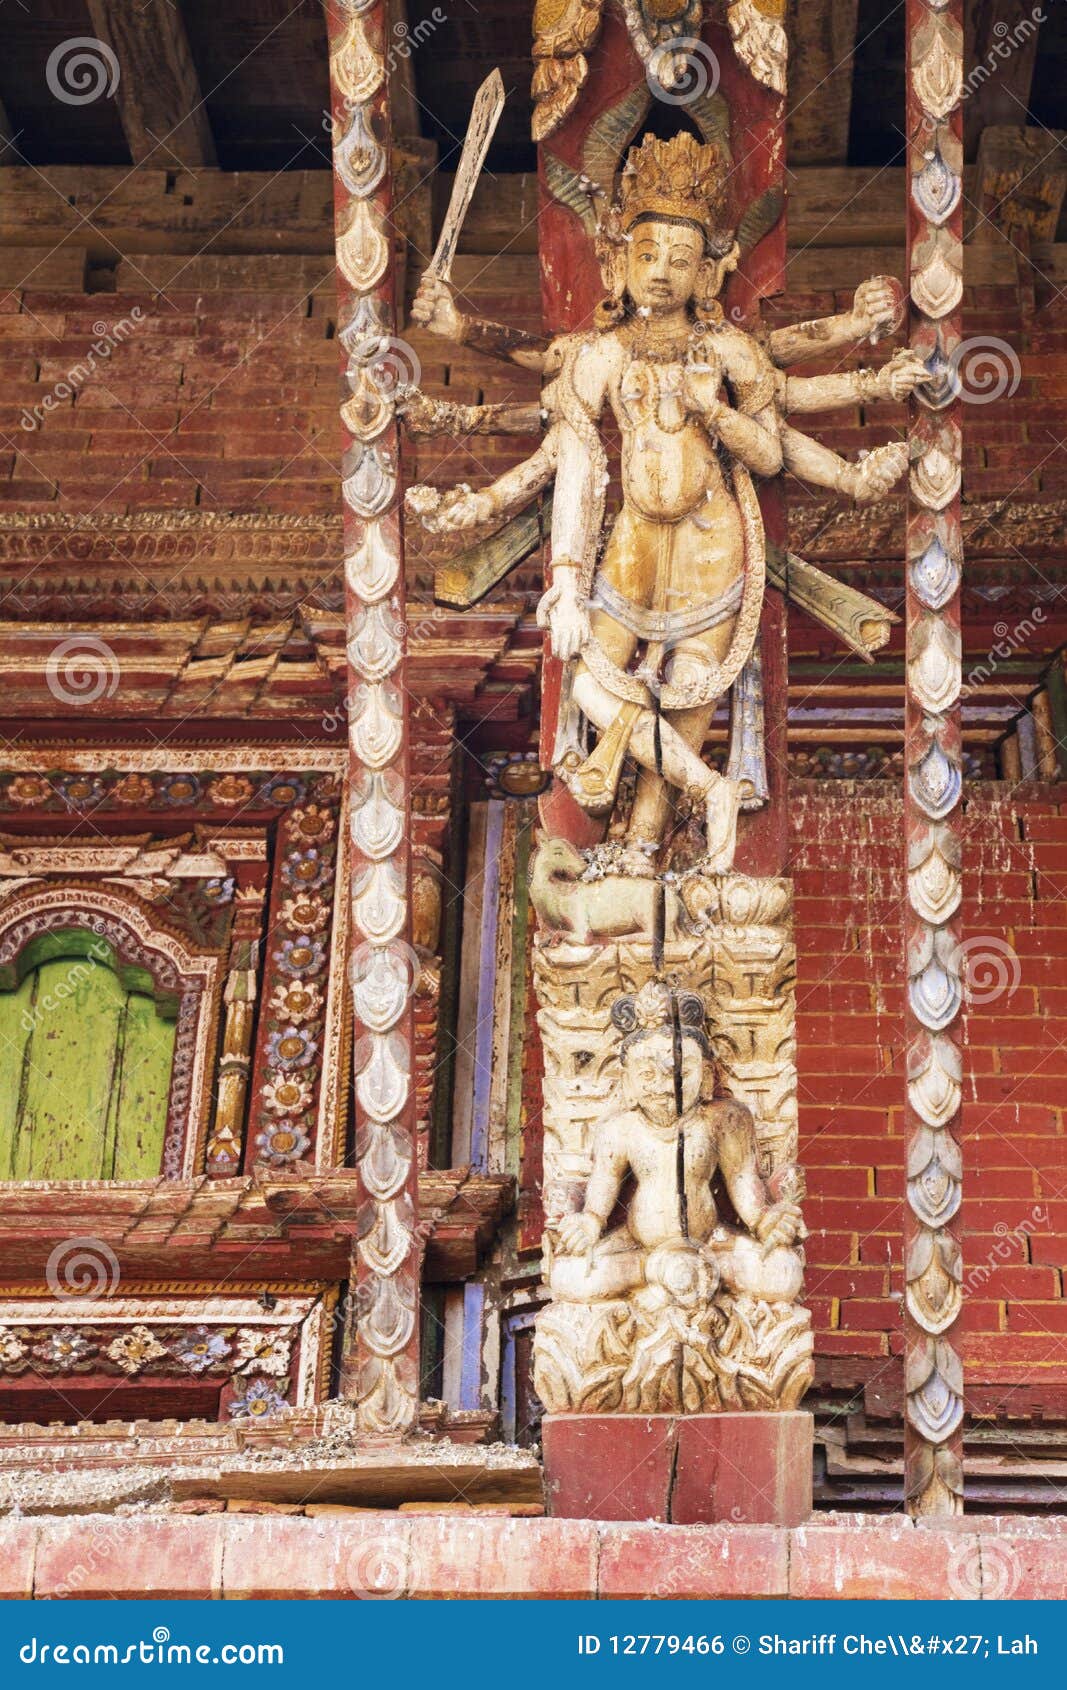 artistic roof strut, changu narayan temple, nepal